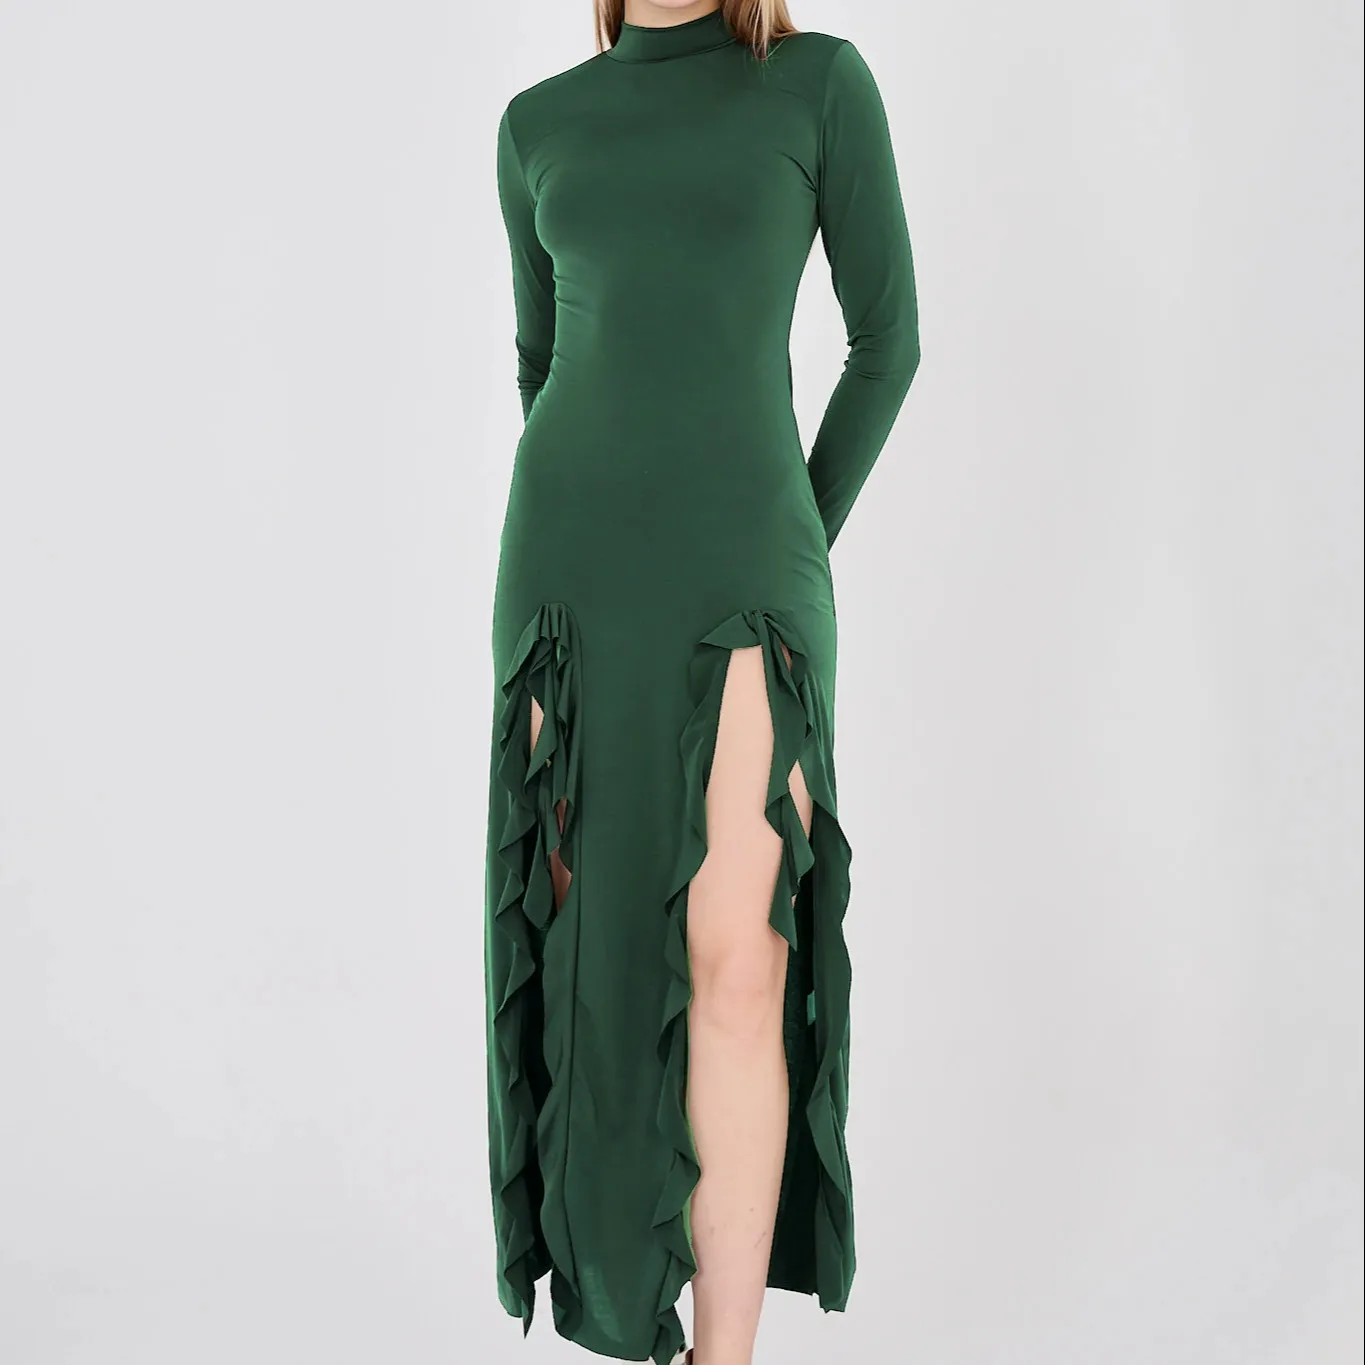 فستان رمادي أخضر زمردي بأكمام طويلة بثقوب على كلا الجانبين بلون رمالي بيج يناسب الحجم الحقيقي